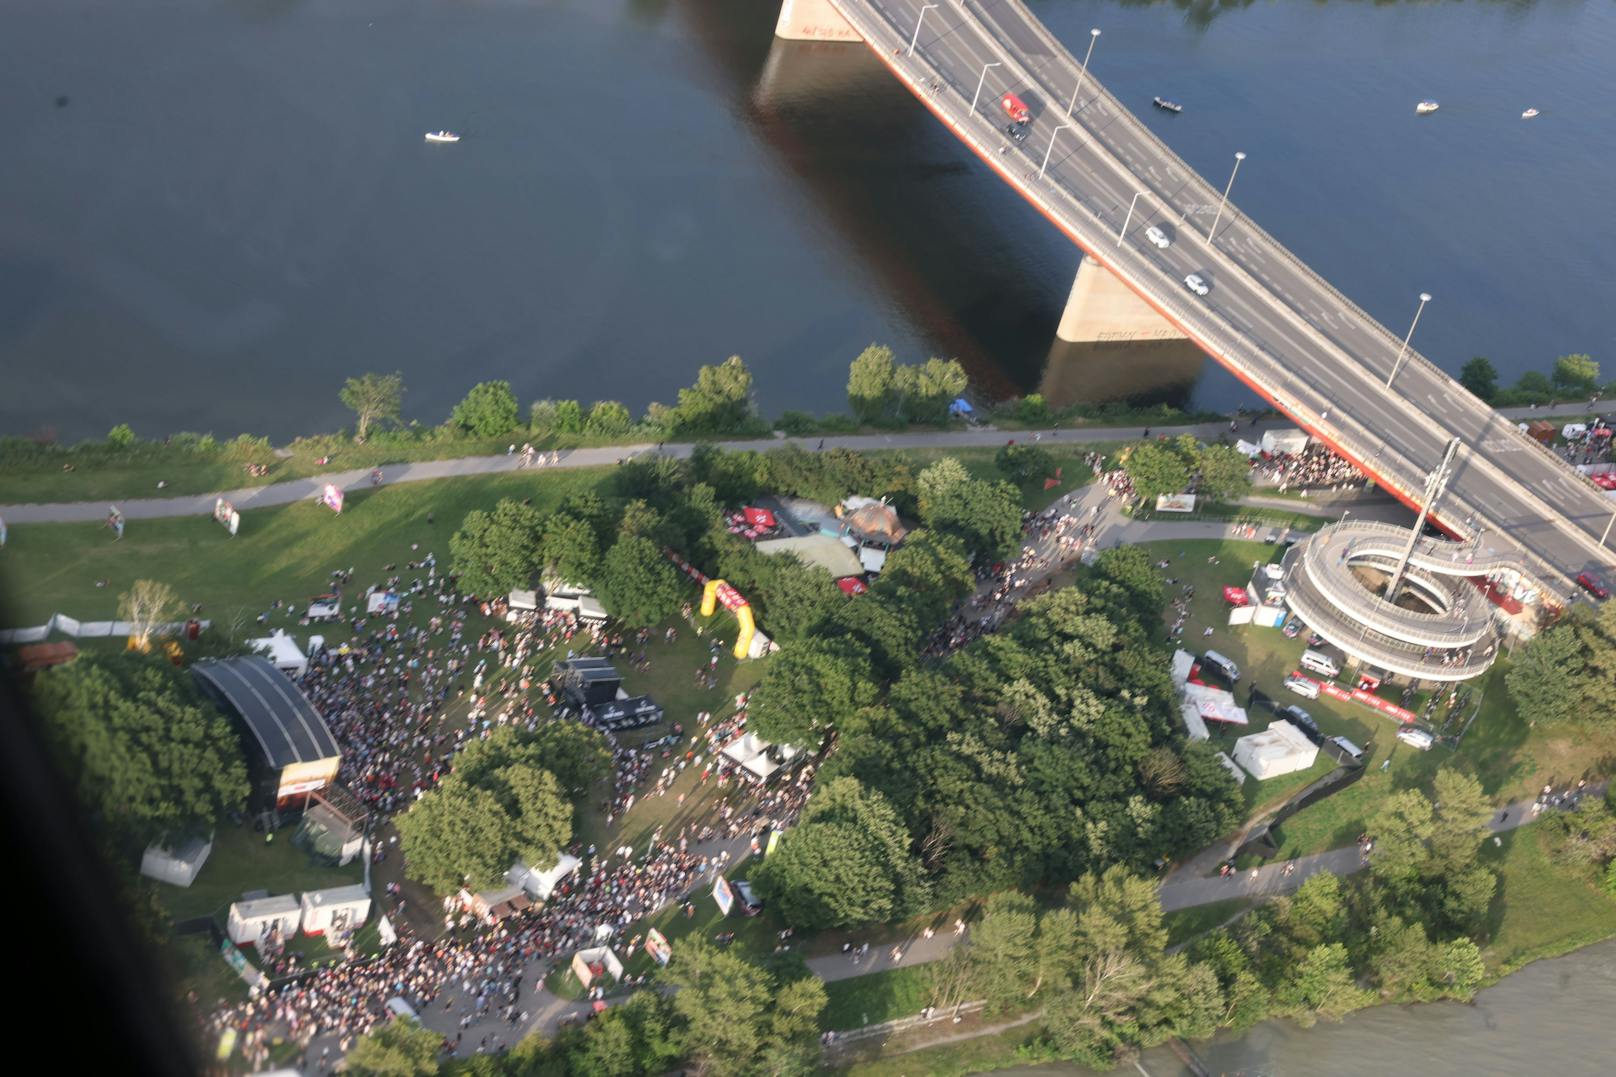 Tausende kamen am Samstag auf die Donauinsel um Musiklegende Wolfgang Ambros & Co. abzufeiern.